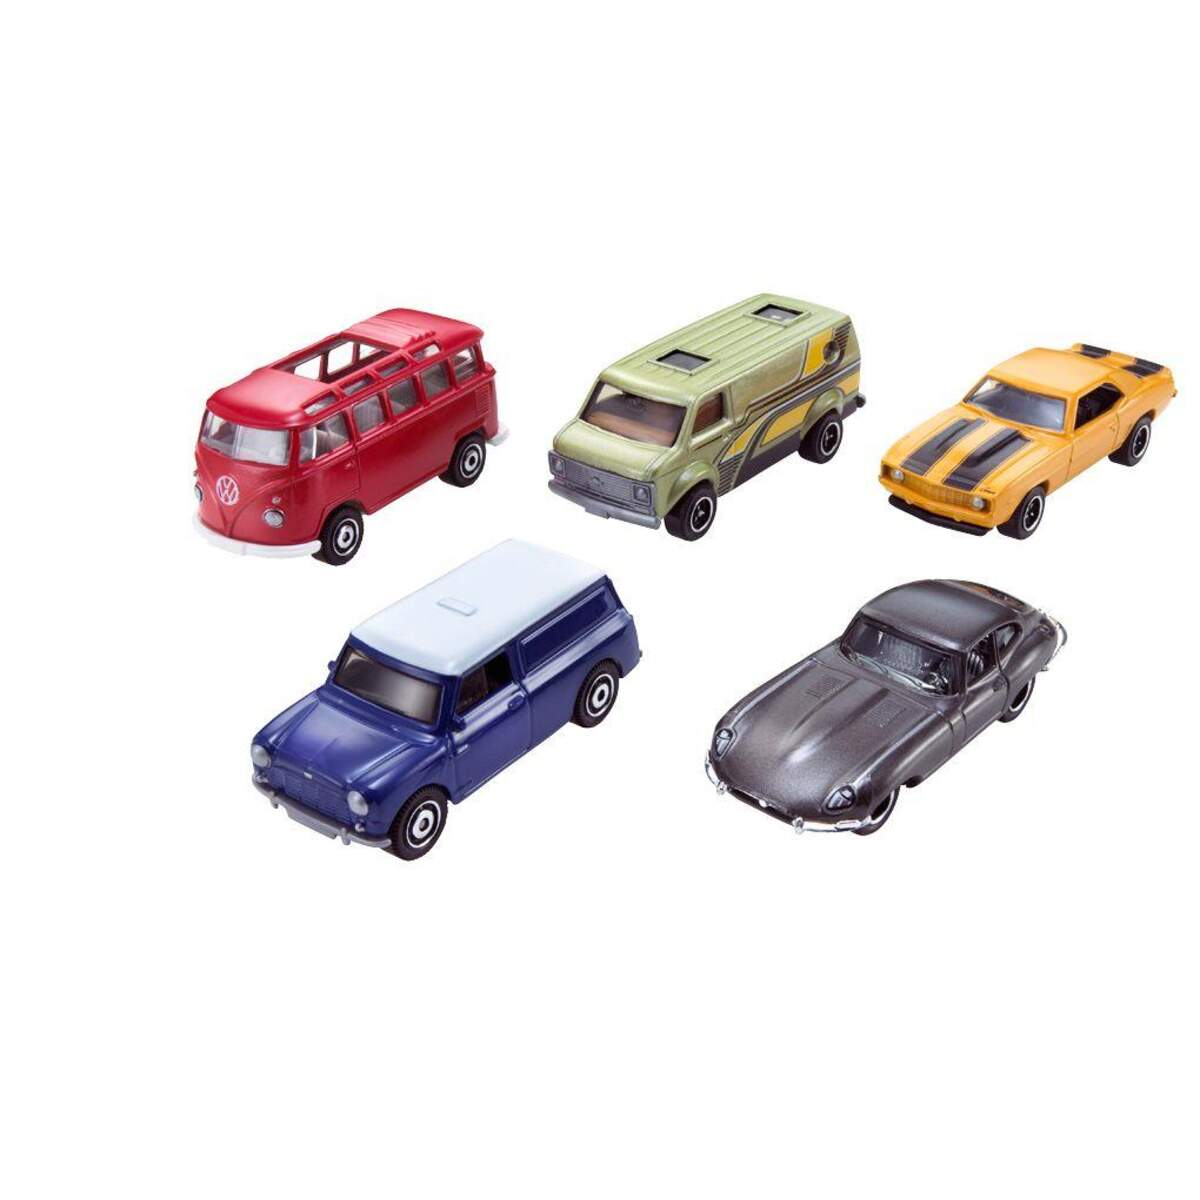 Mattel Matchbox Spielzeugautos Geschenkset 5-teilig, sortiert